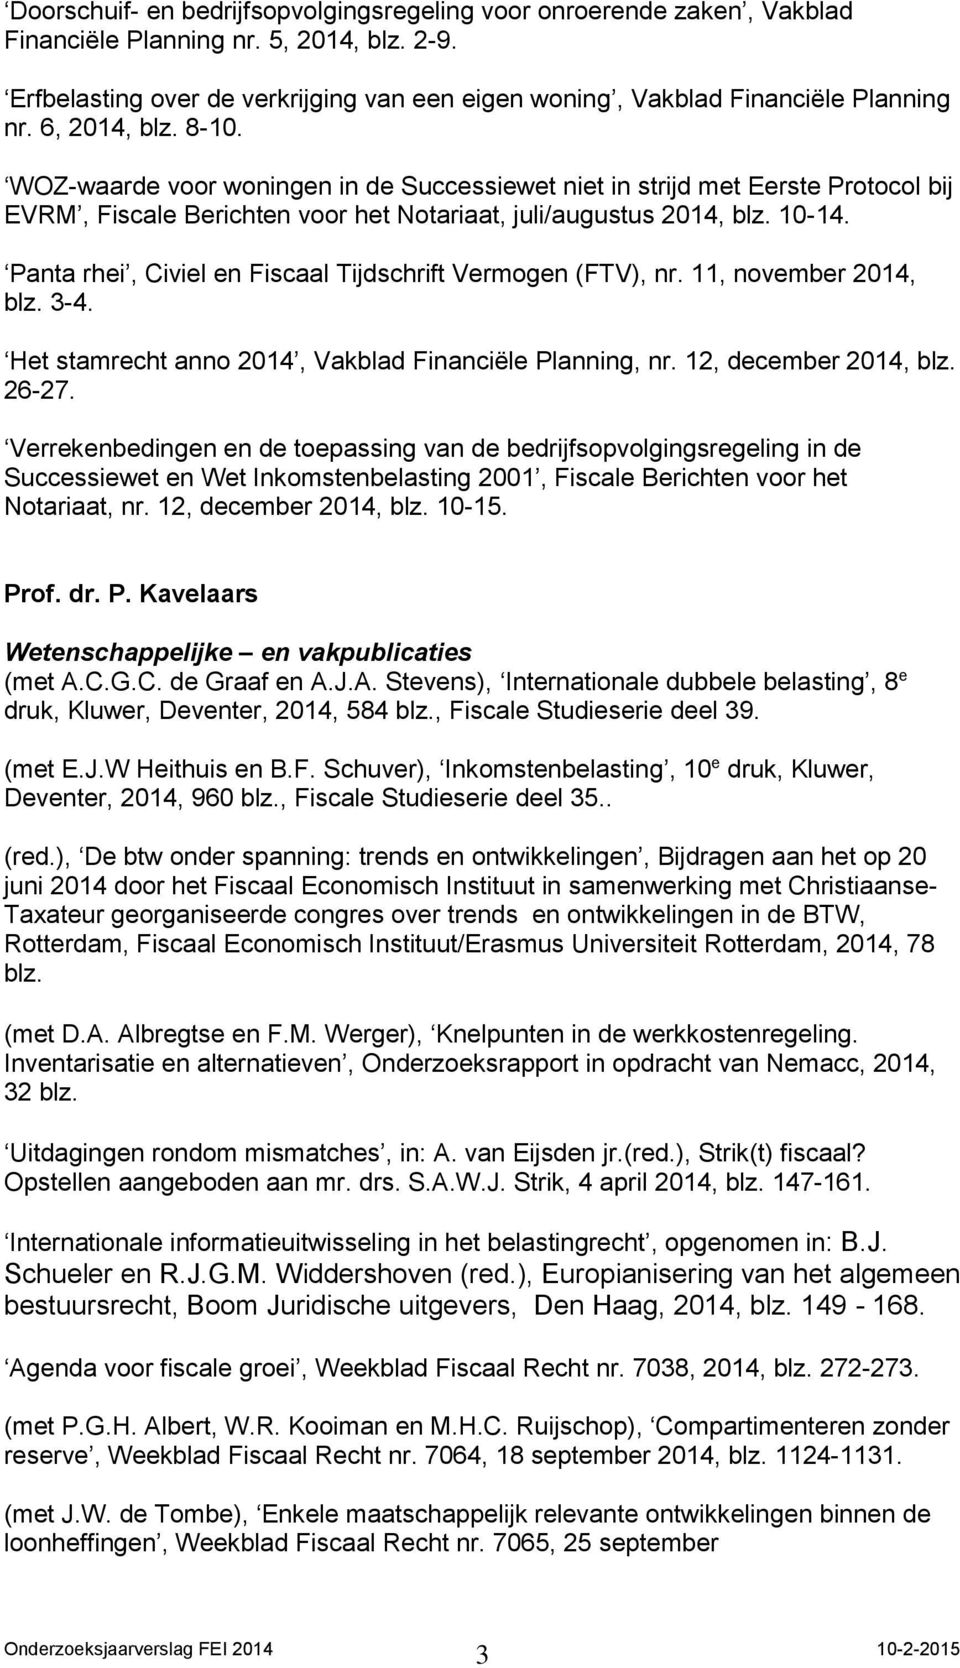 WOZ-waarde voor woningen in de Successiewet niet in strijd met Eerste Protocol bij EVRM, Fiscale Berichten voor het Notariaat, juli/augustus 2014, blz. 10-14.